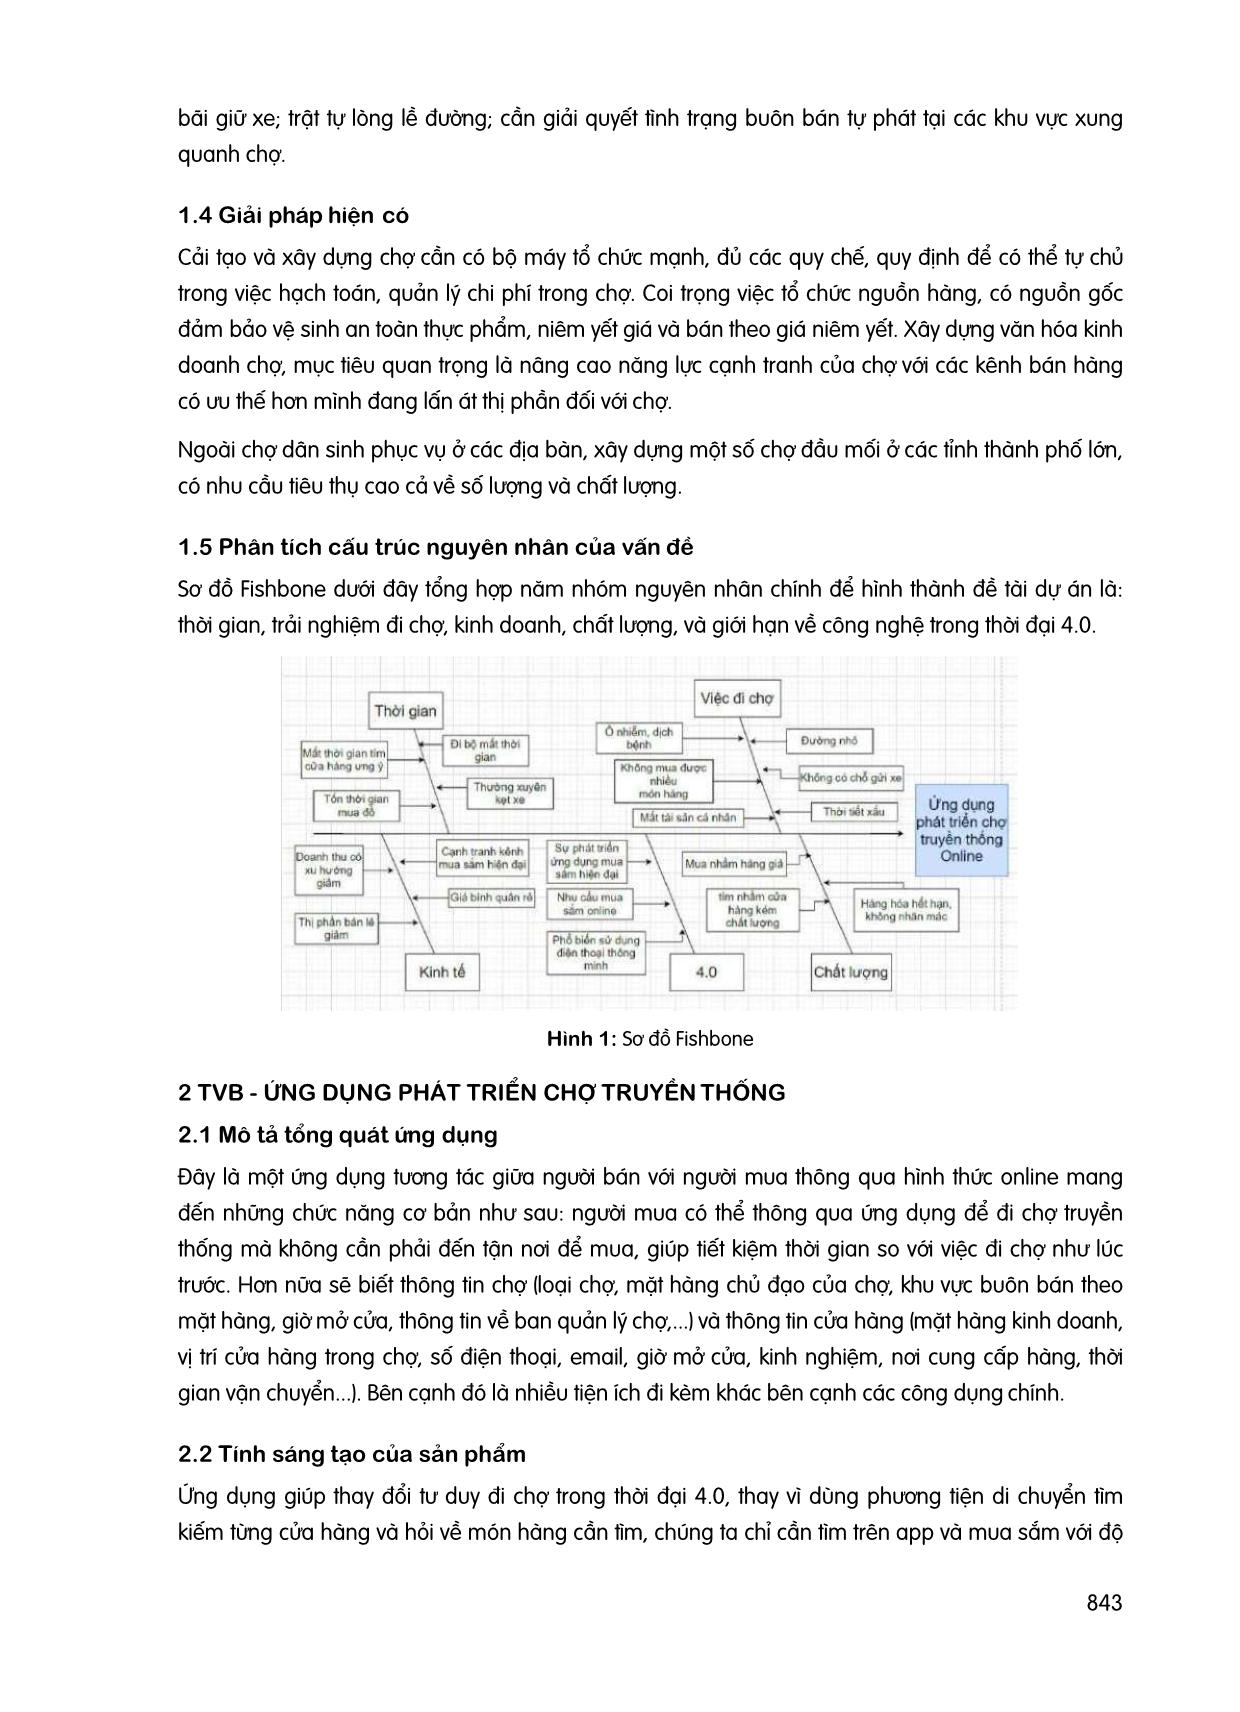 TVB - Ứng dụng phát triển chợ truyền thống trang 3